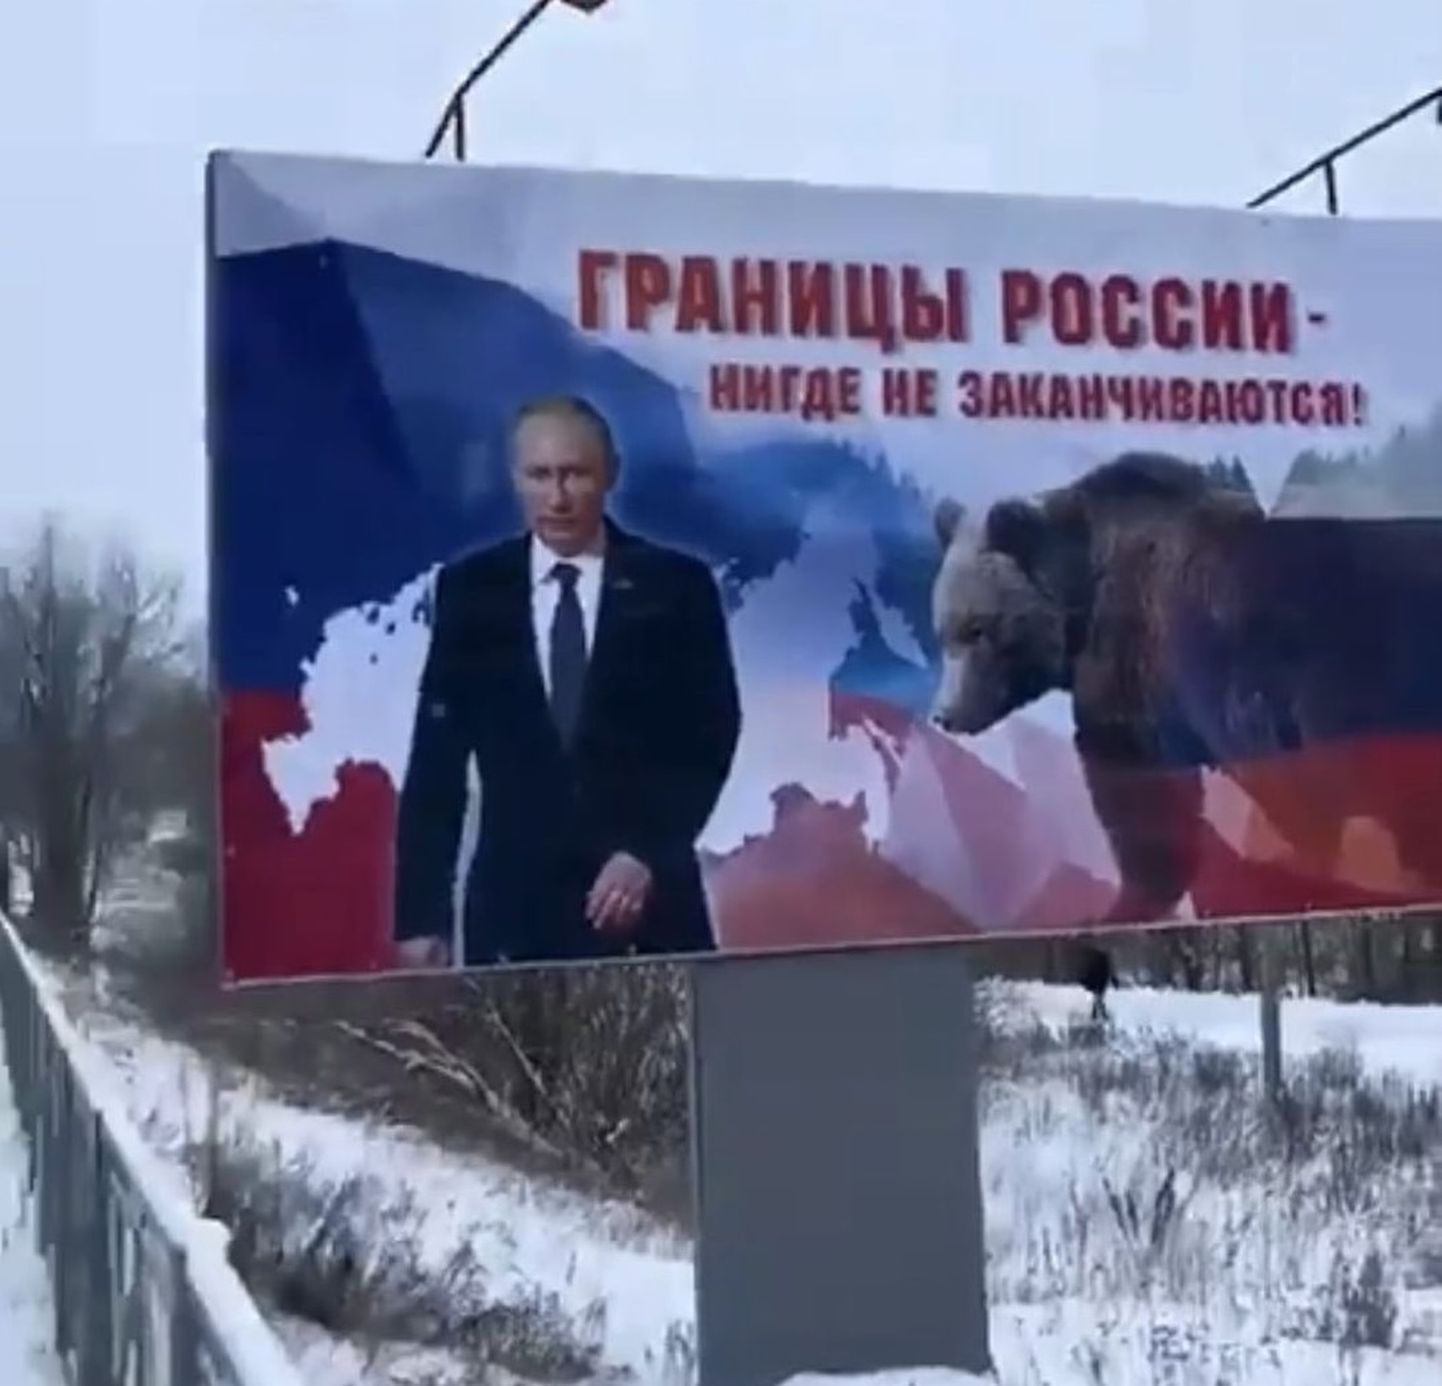 Venemaa piirid ei lõpe kusagil – plakat Eesti piiri lähistel.